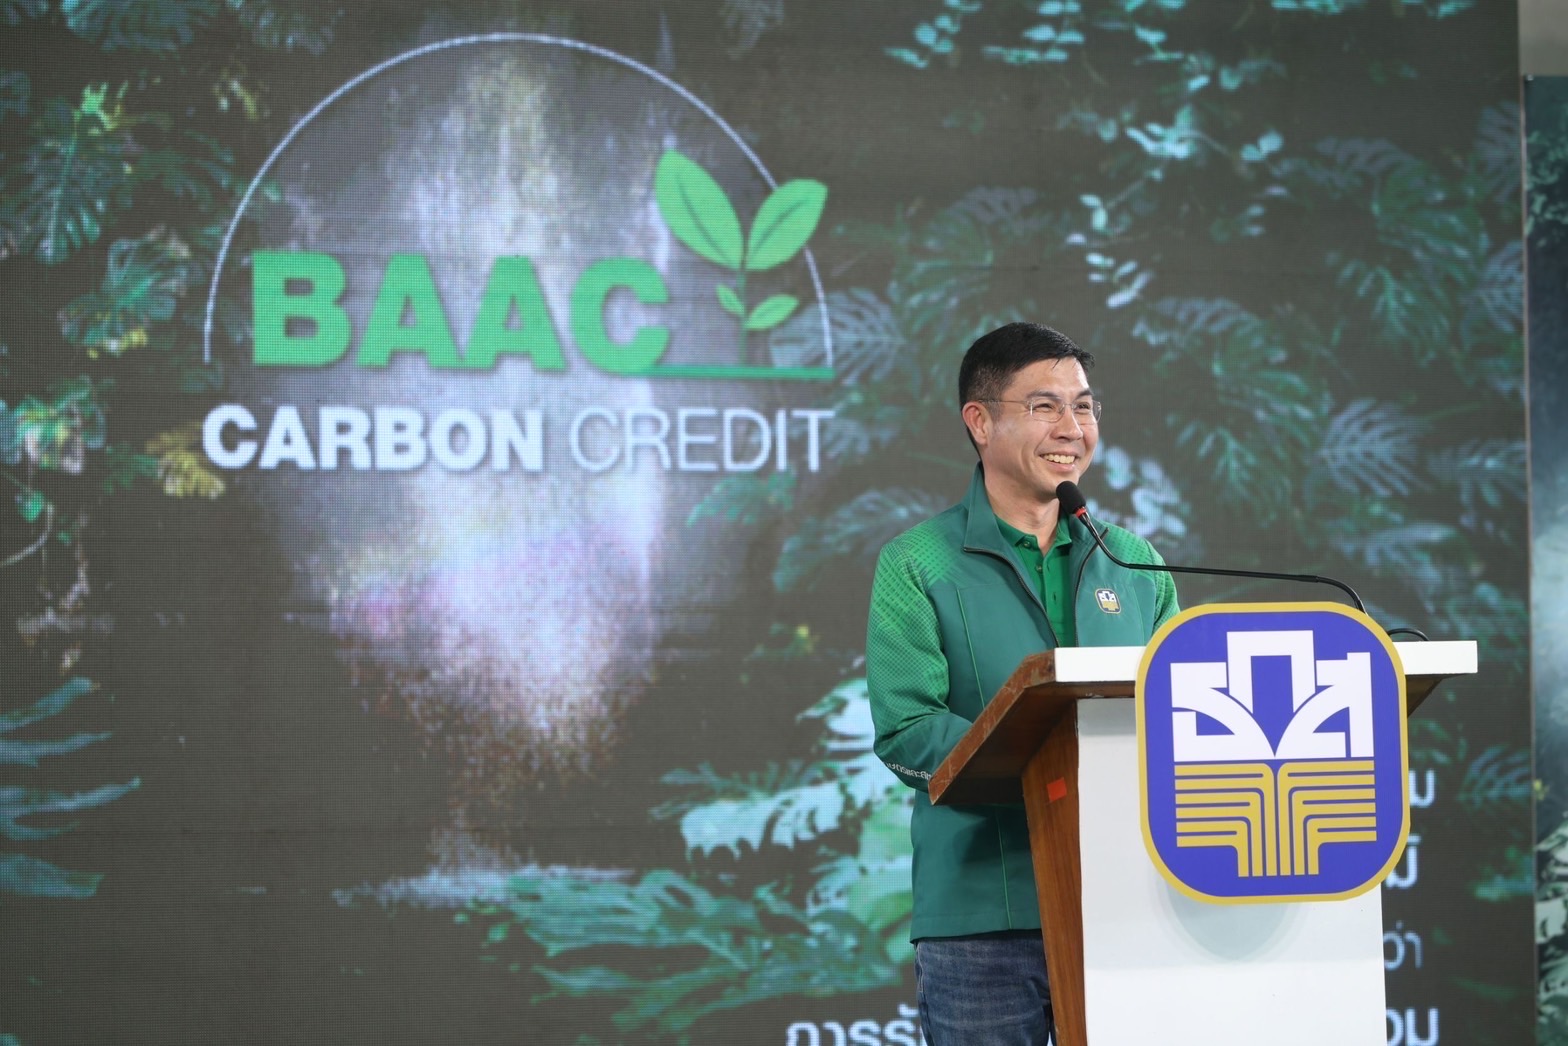 ธ.ก.ส. เปิดโครงการ BAAC Carbon Credit สร้างรายได้ให้ชุมชน